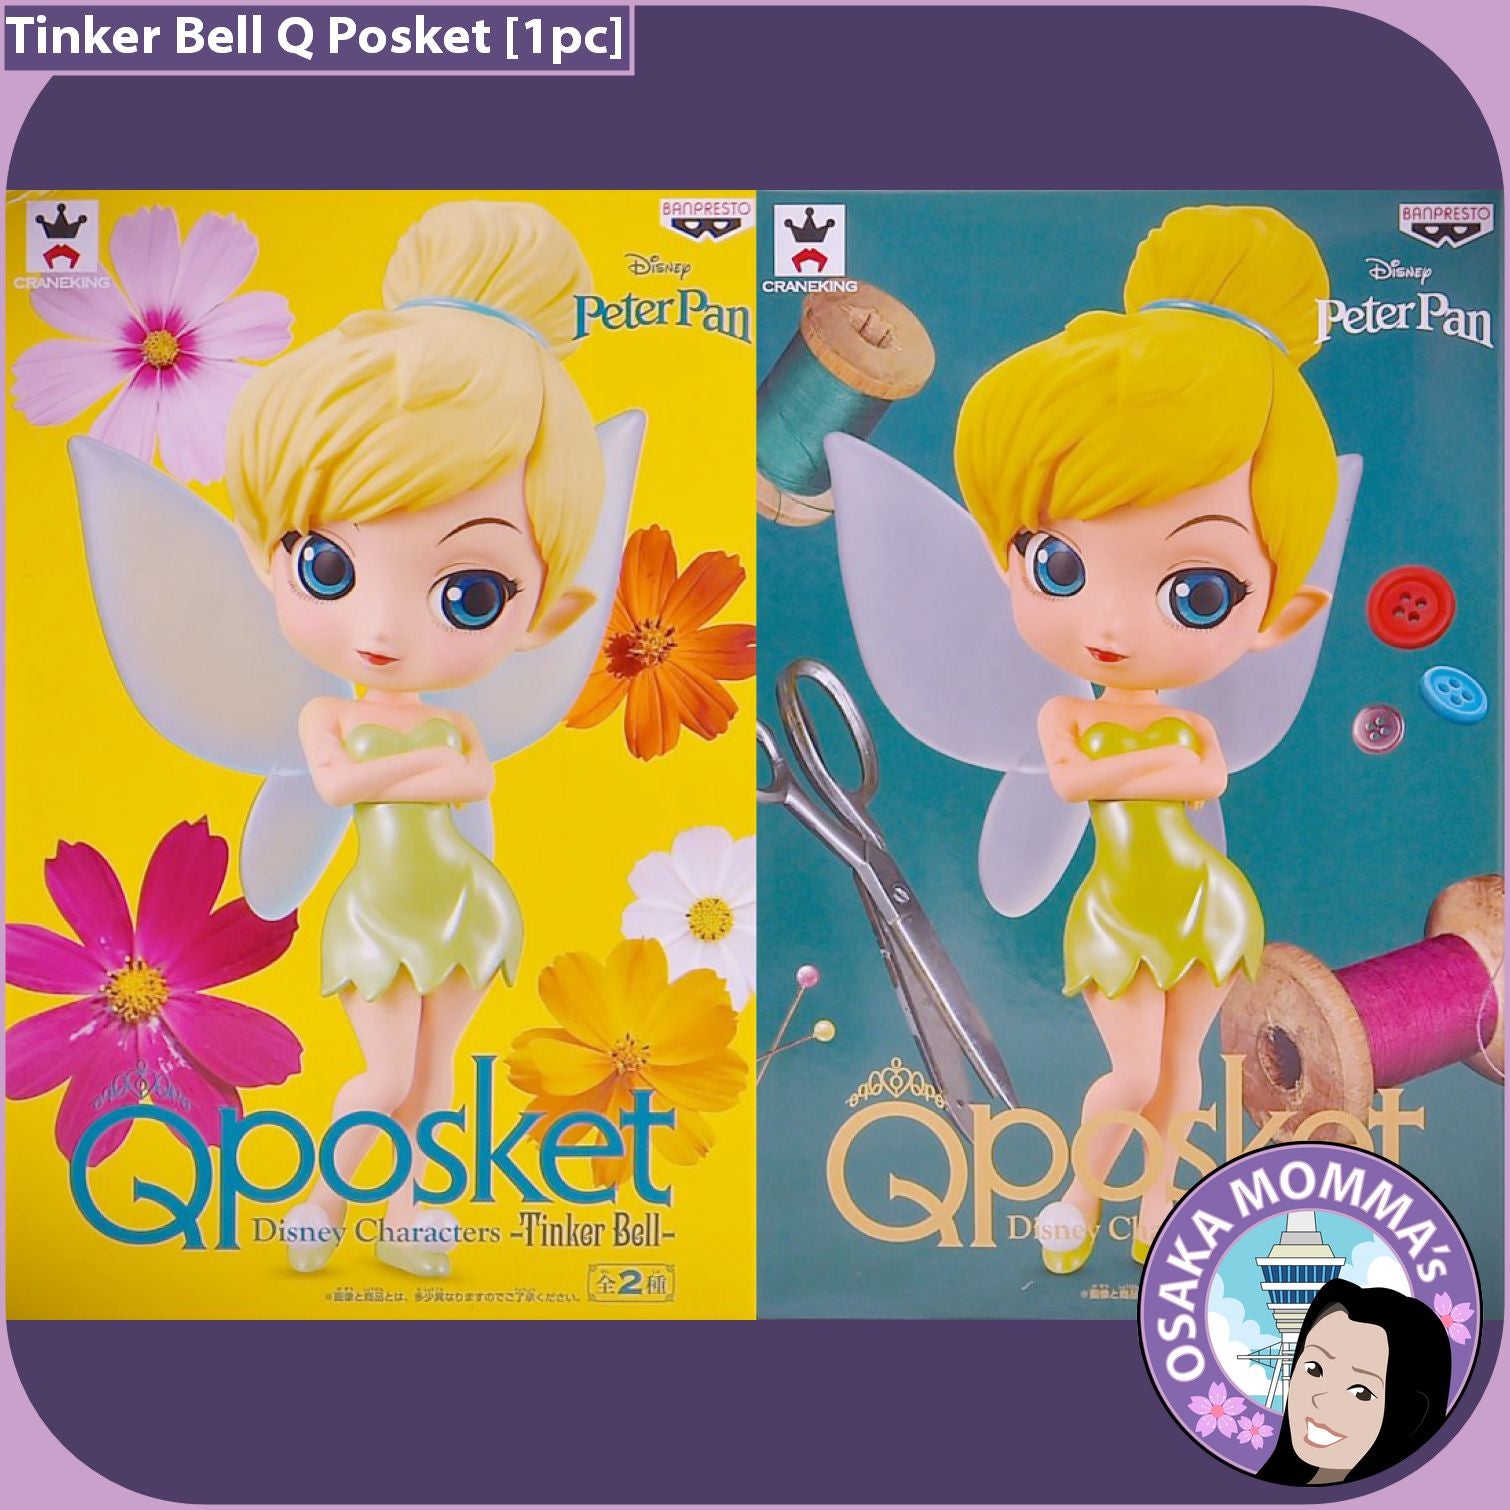 Estátua Banpresto Qposket Disney Characters - Tinker Bell (ver. A